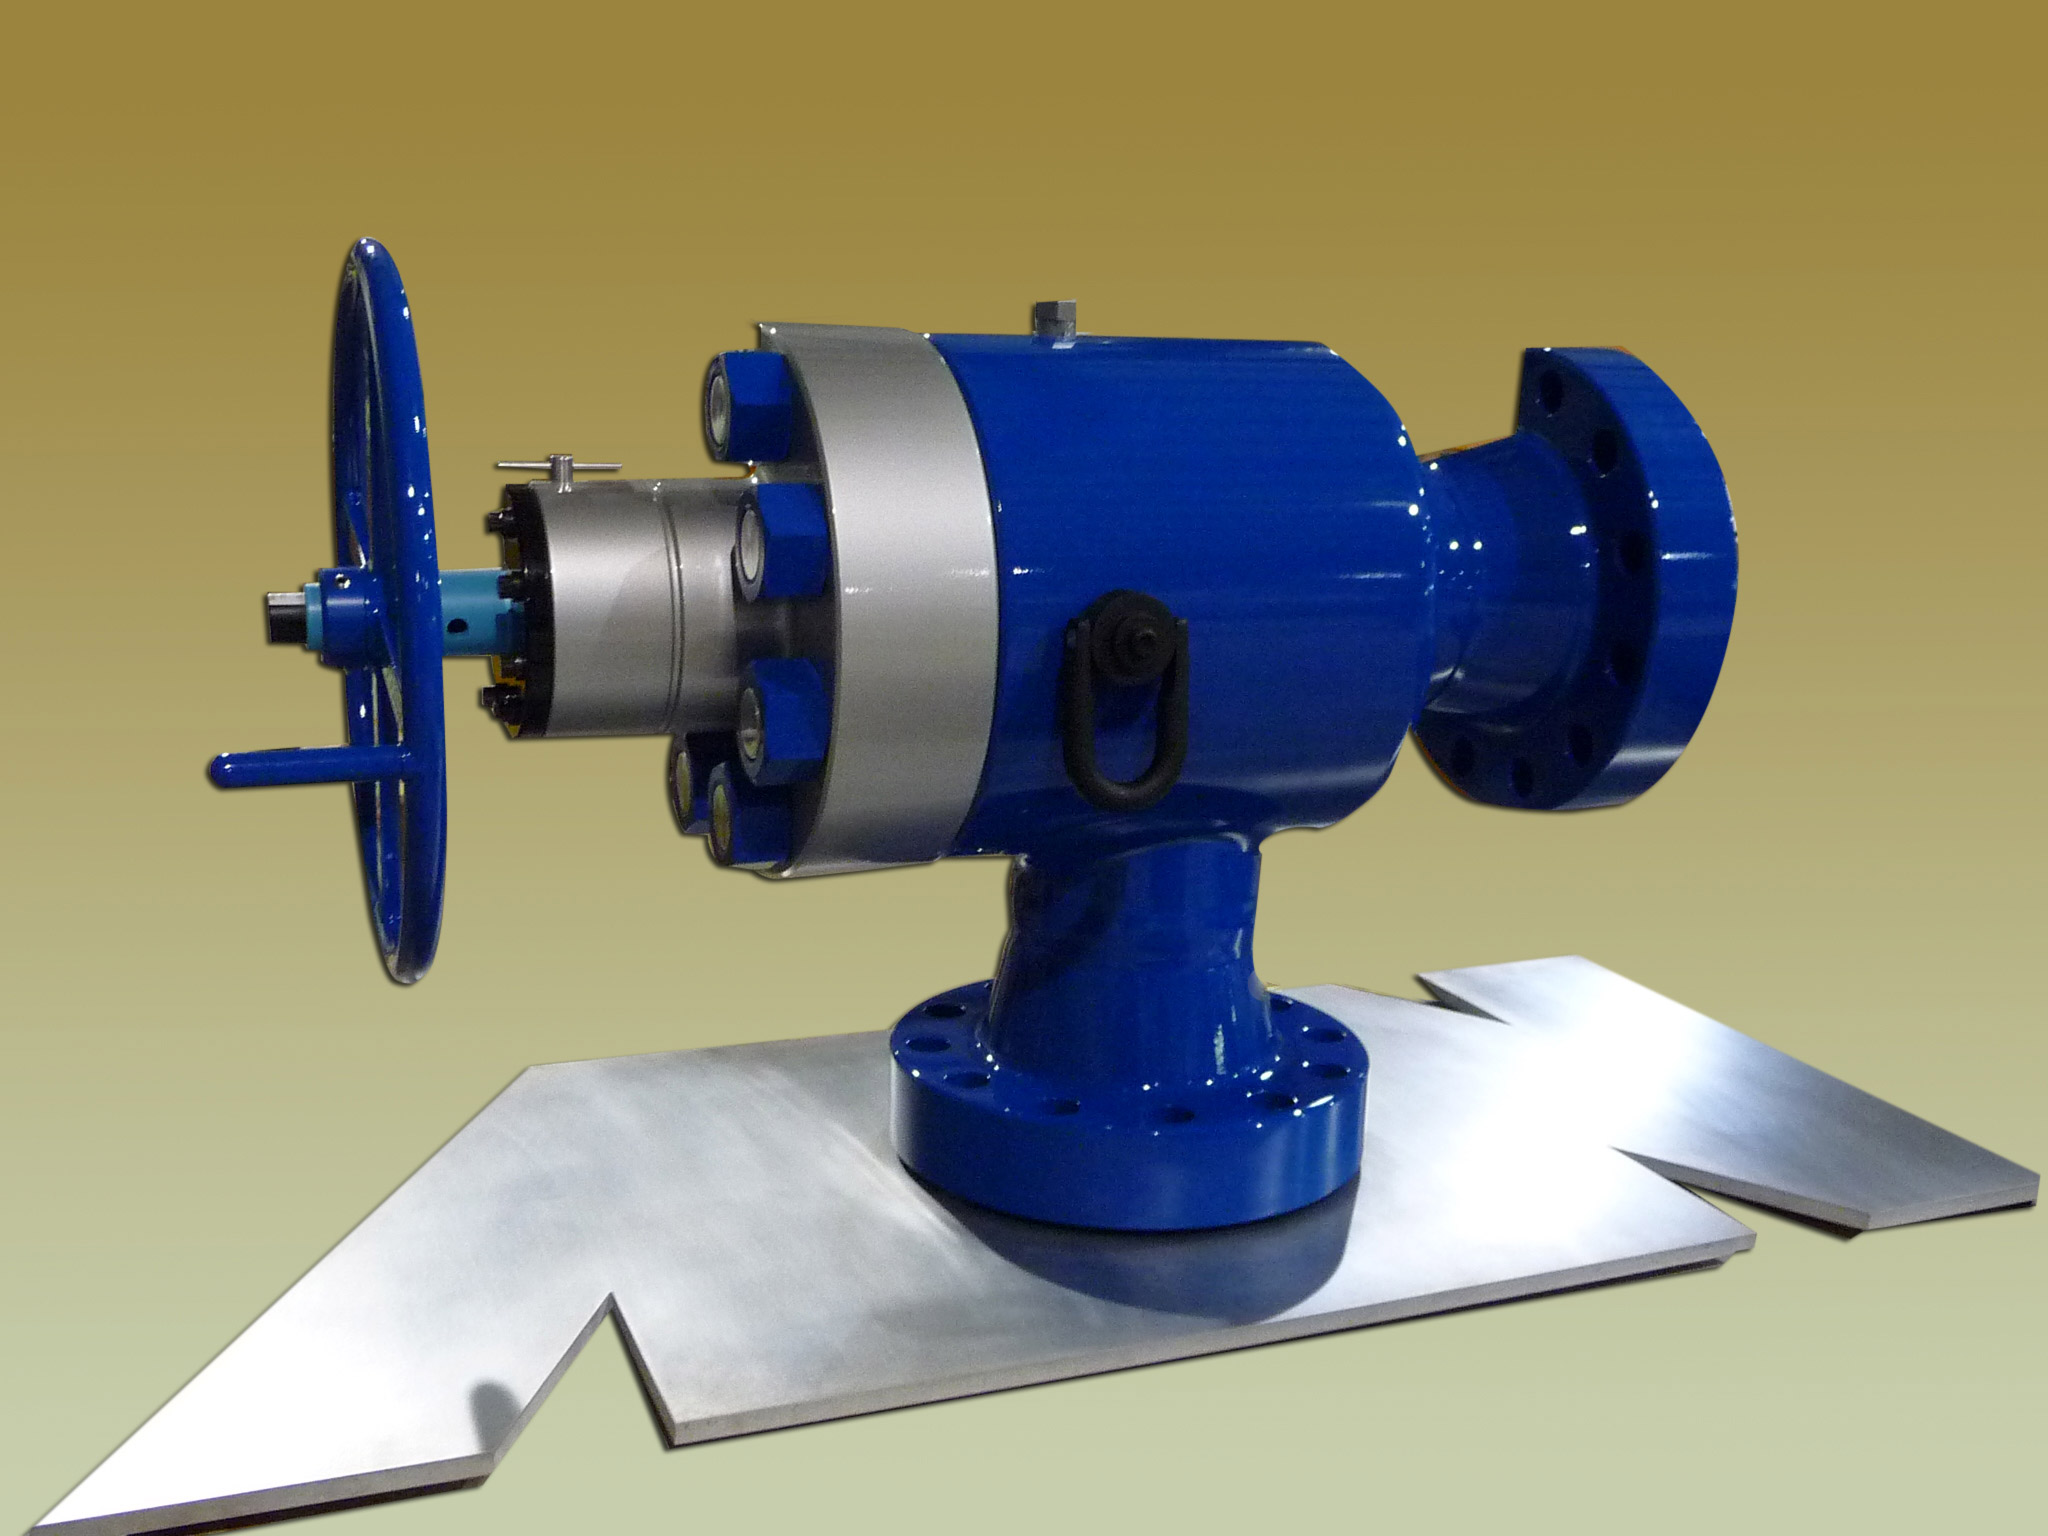 Cutaway pump demo model